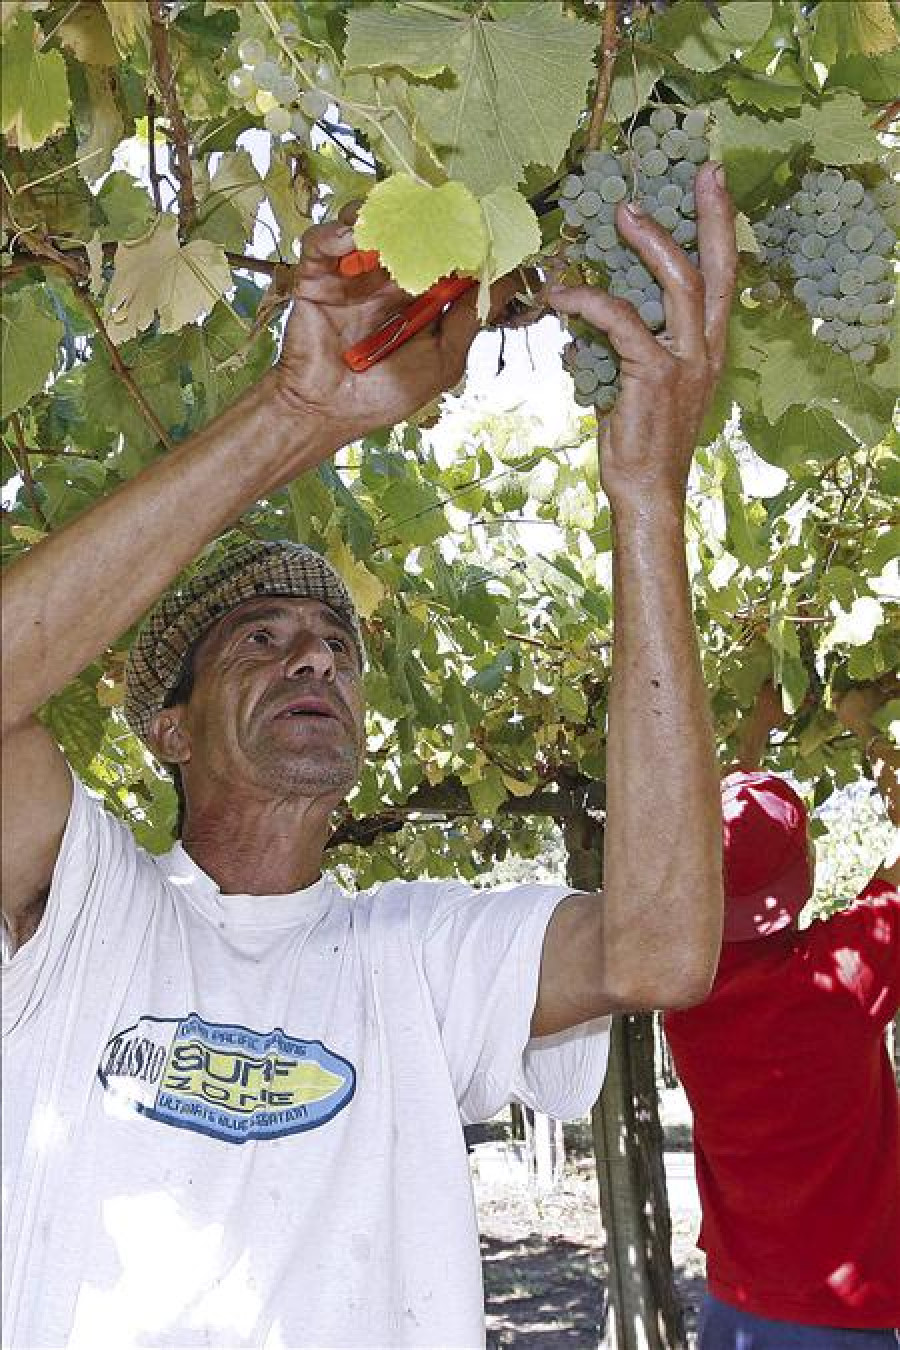 Los vinos Rías Baixas, los blancos españoles más vendidos en Estados Unidos